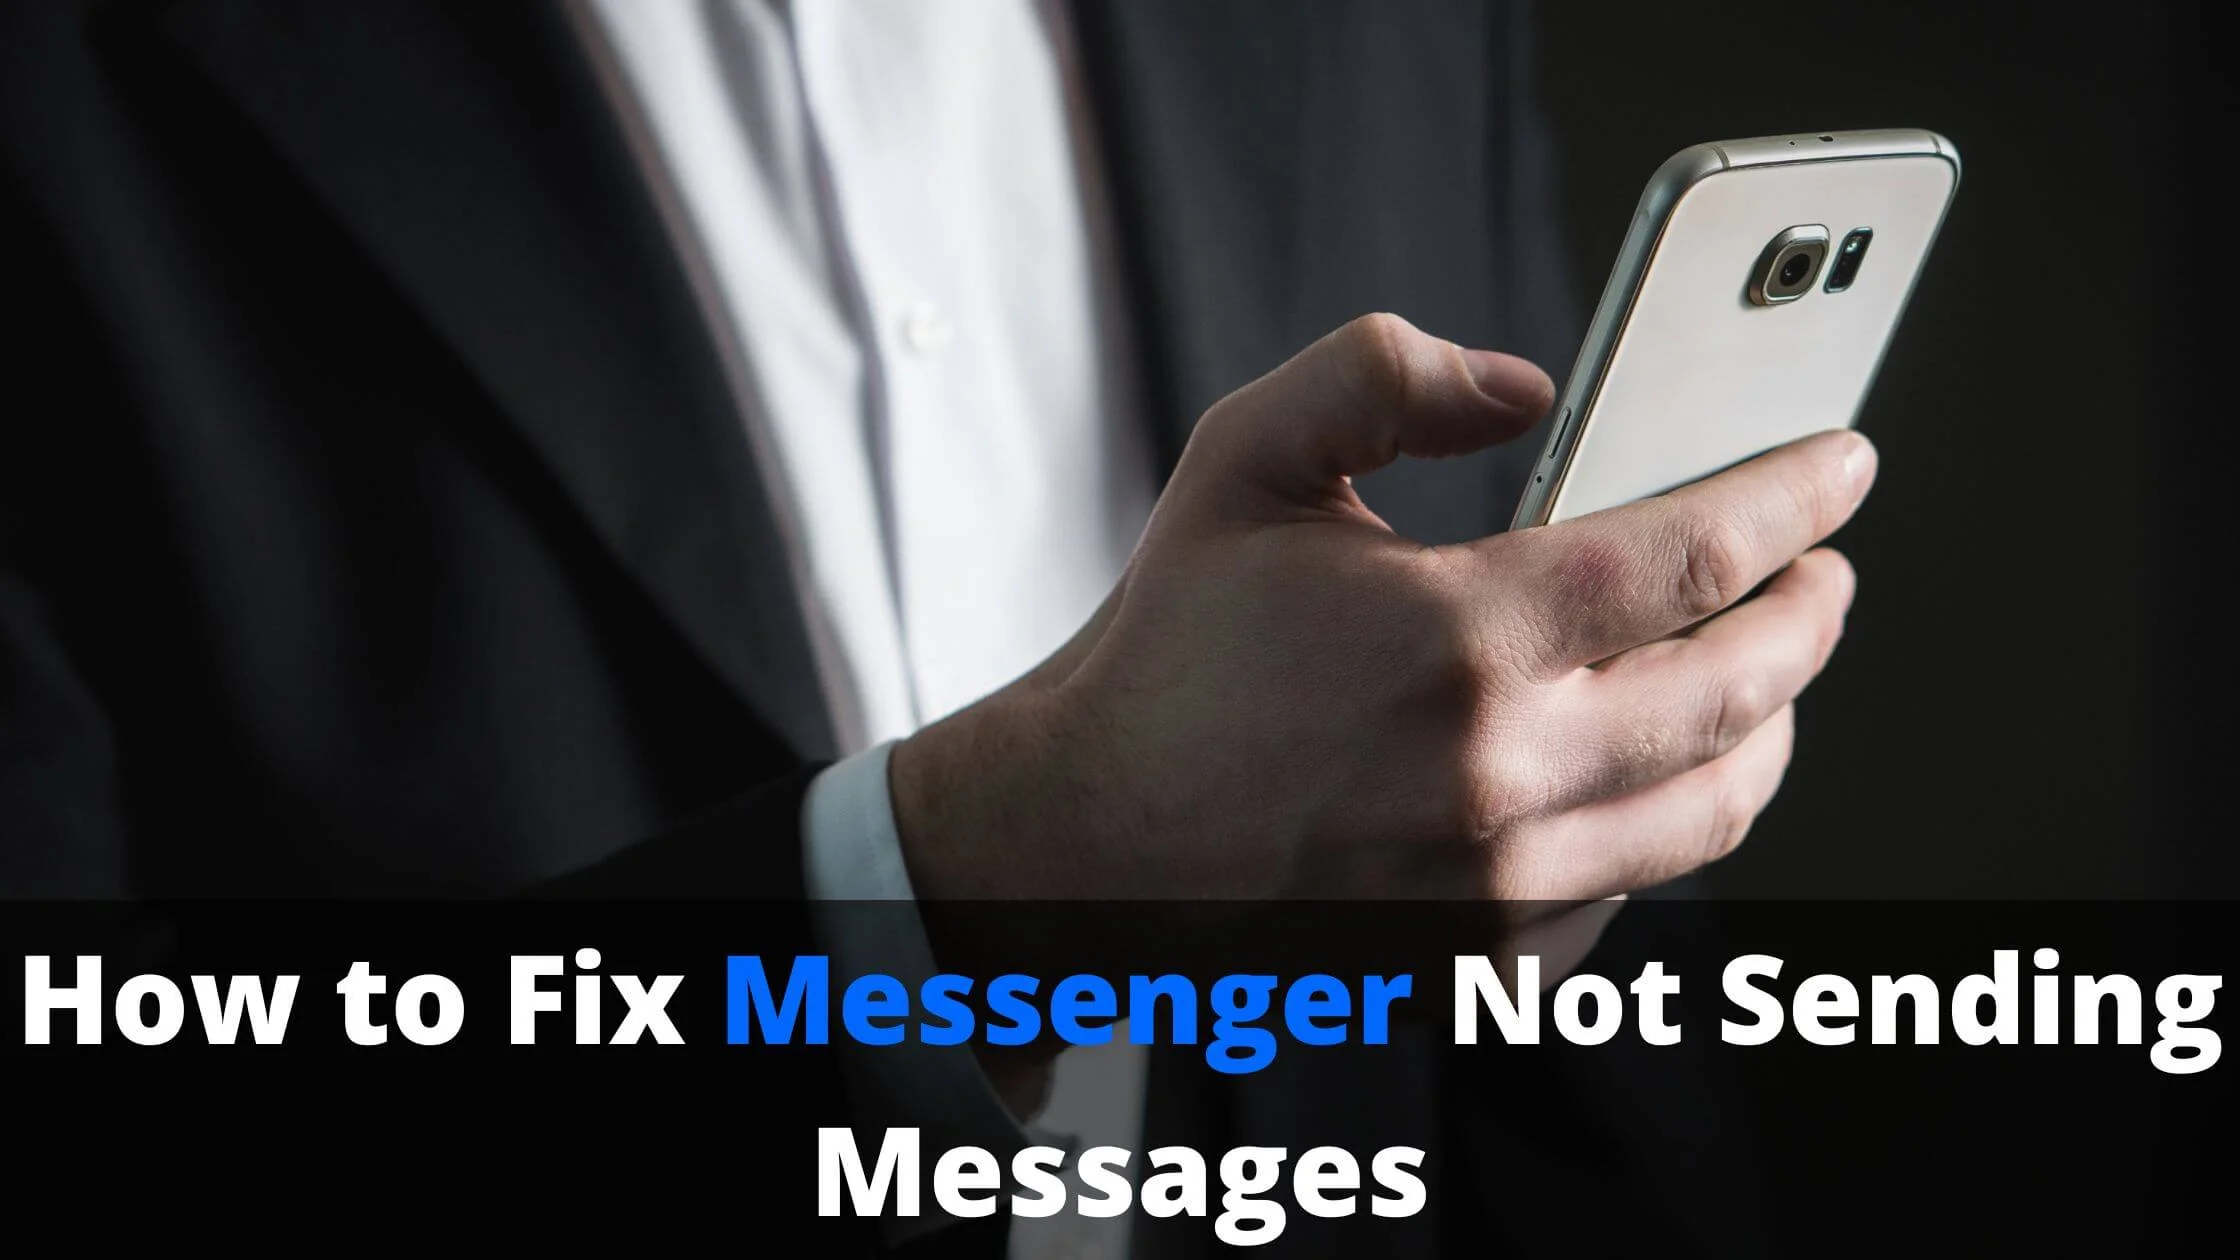 Messenger Not Sending Messages